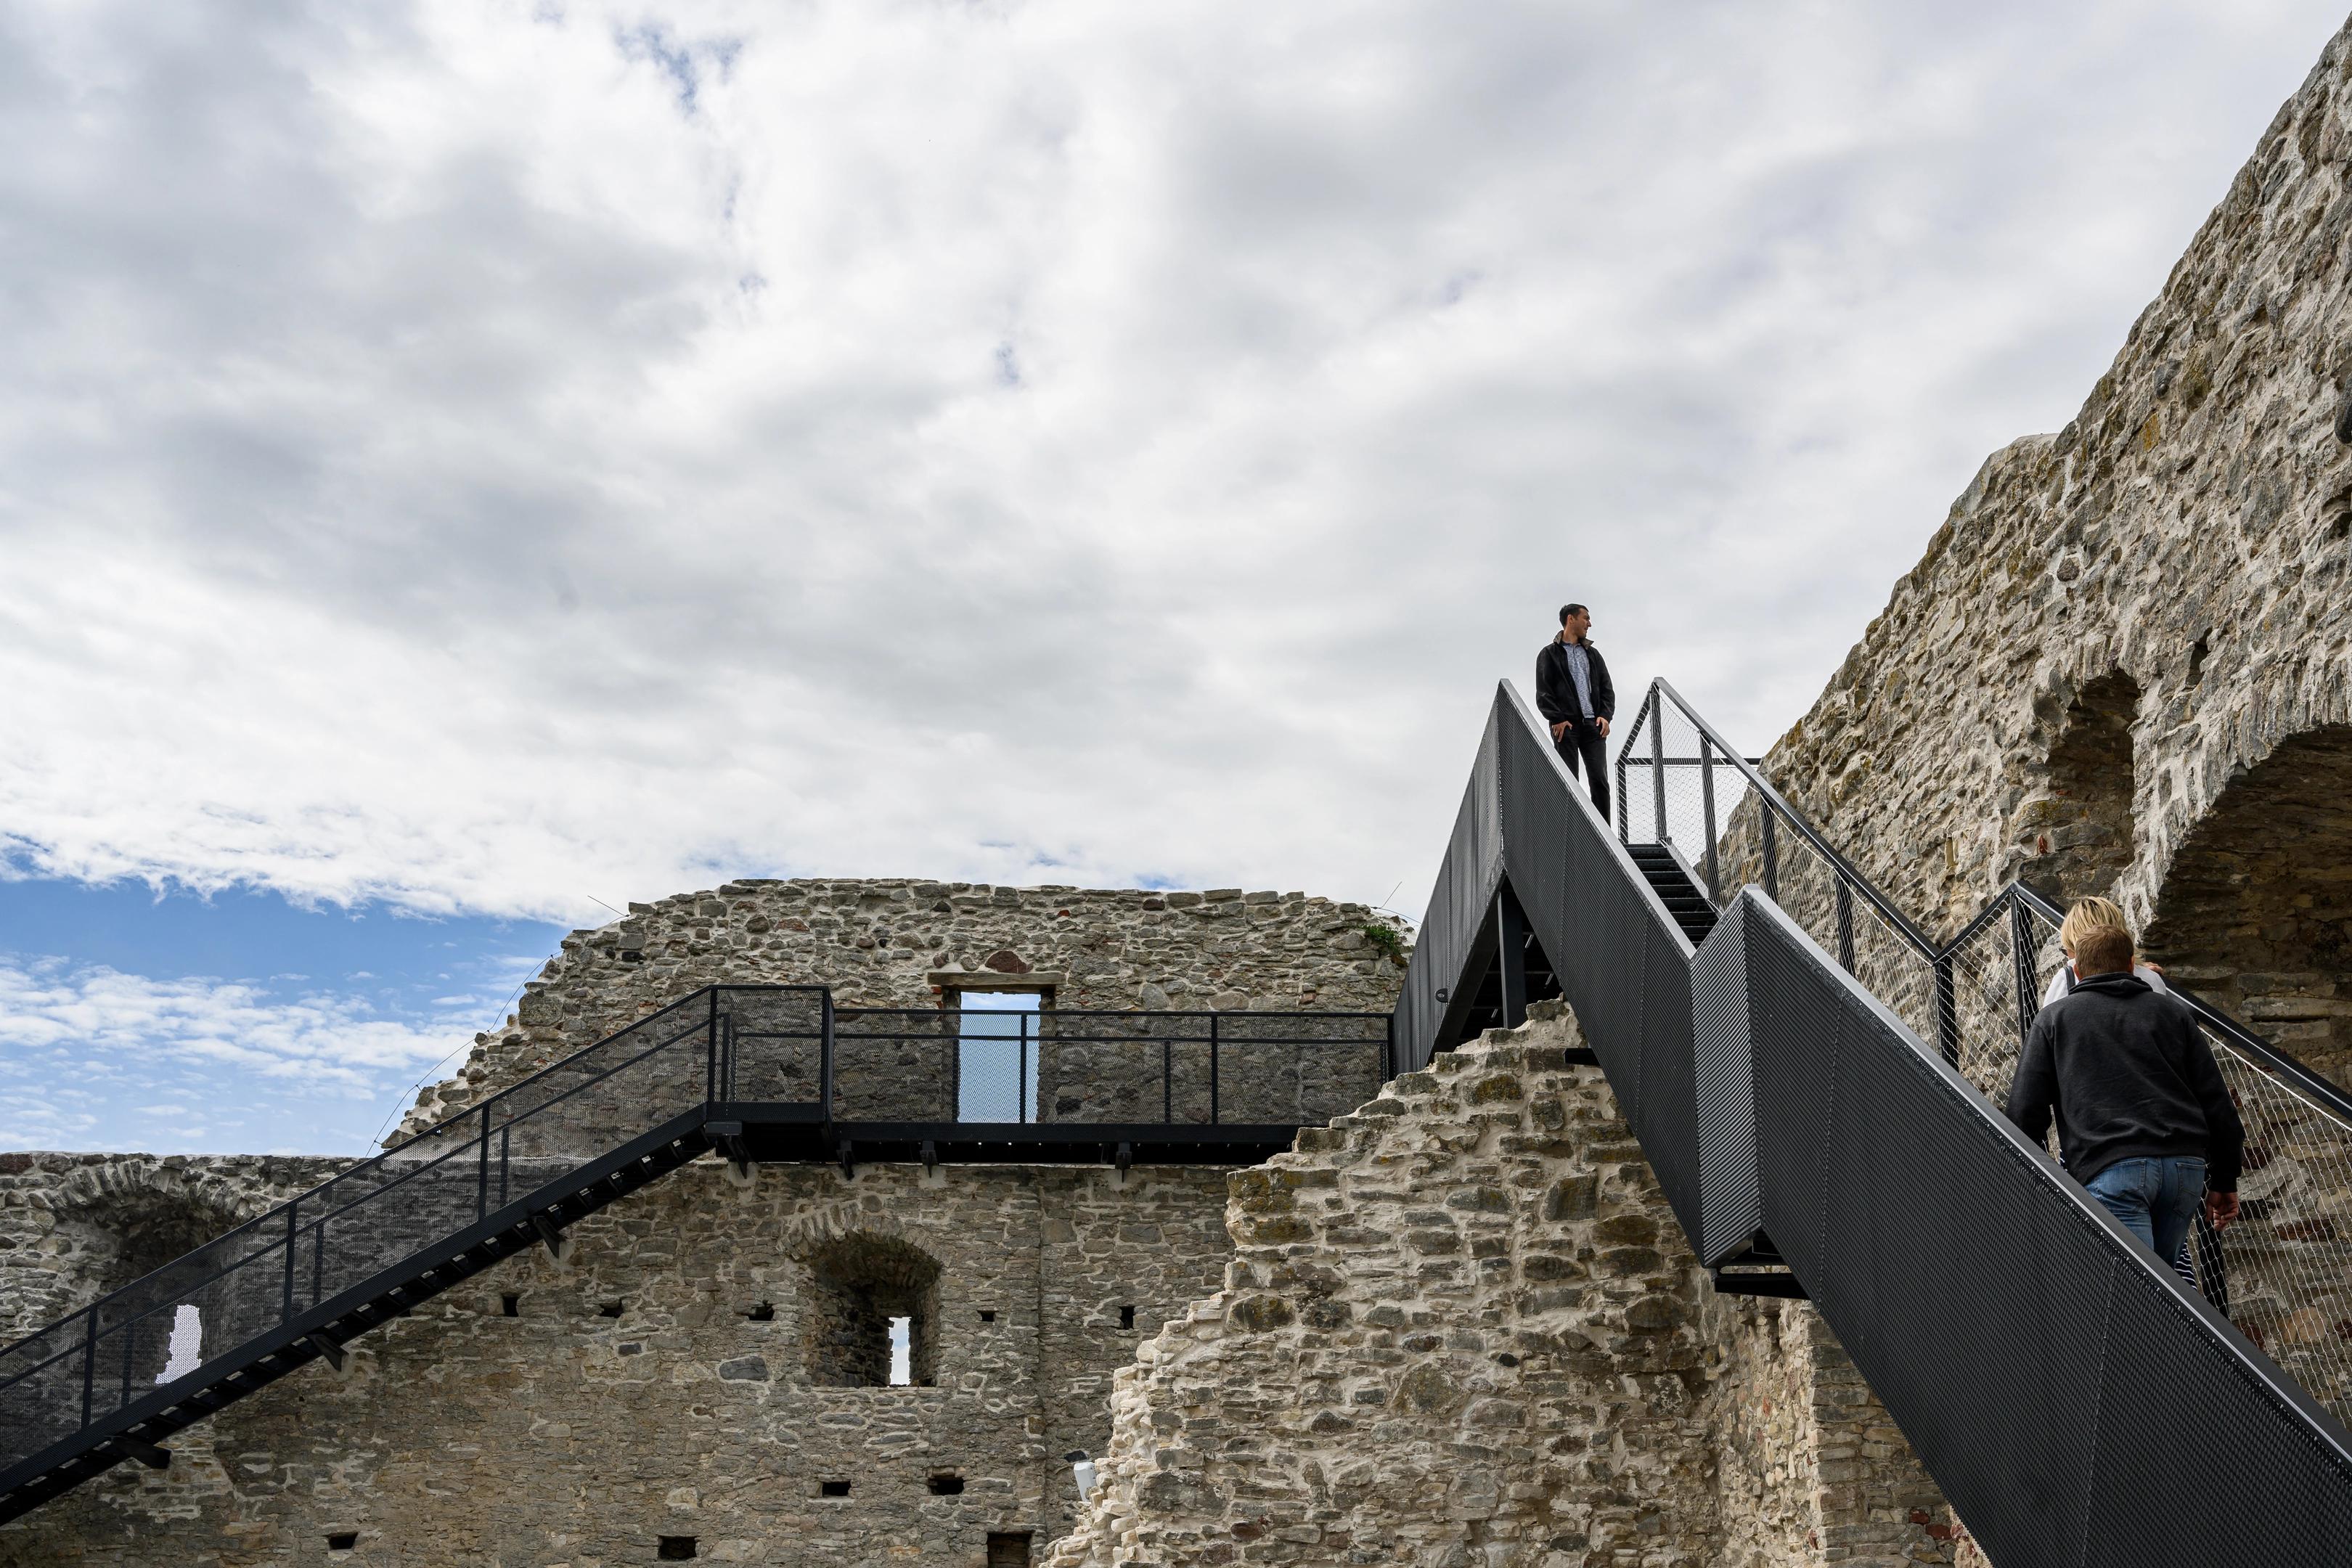 Trepid ja terrassid pakuvad ohtralt võimalusi linnuse ja linna vaatlemiseks eri tasapindadelt